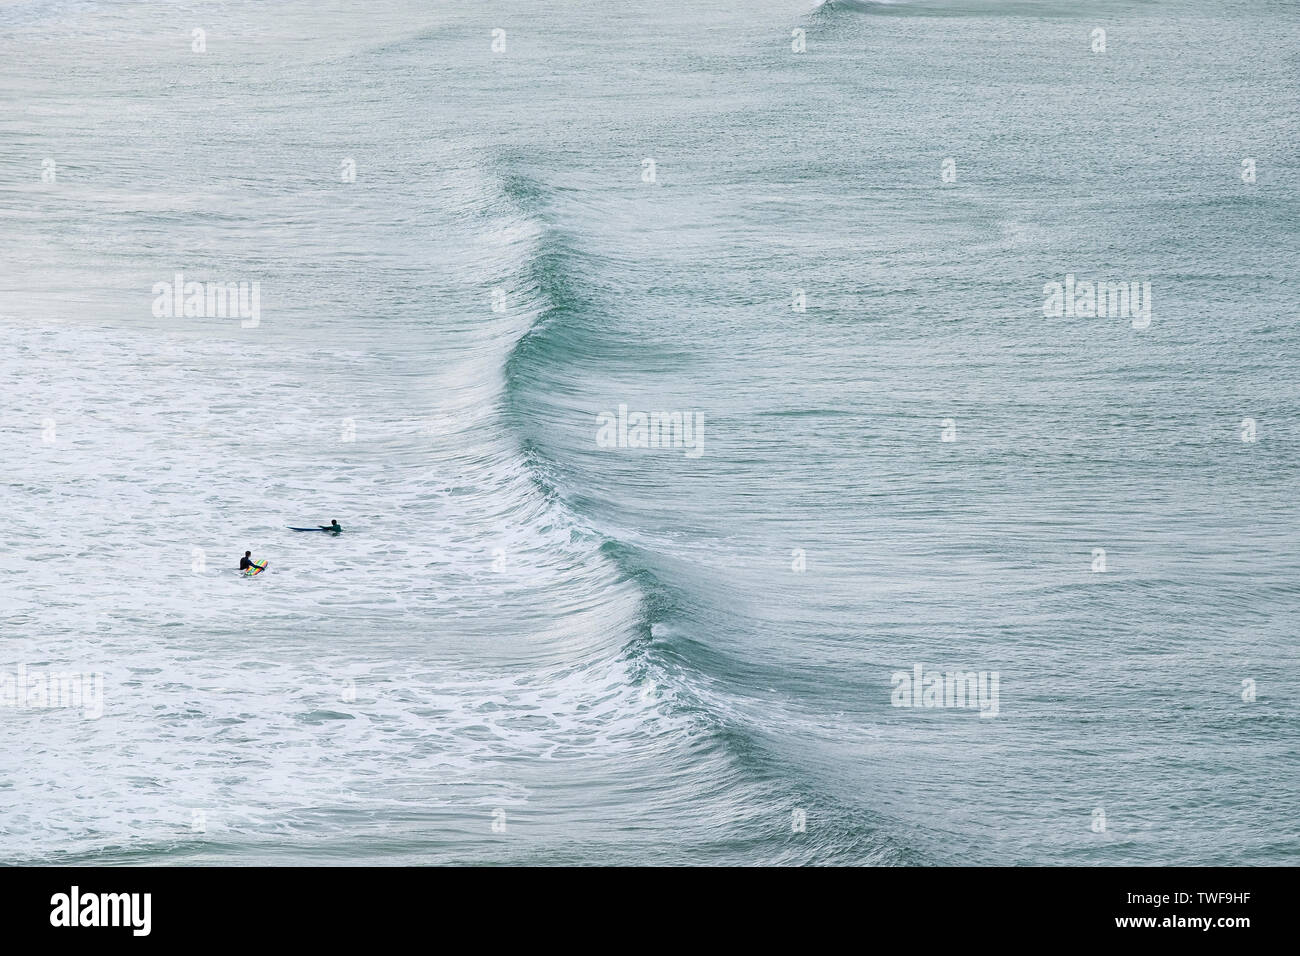 Les surfeurs en attente d'une vague entrant à plage de Crantock en Newquay en Cornouailles. Banque D'Images